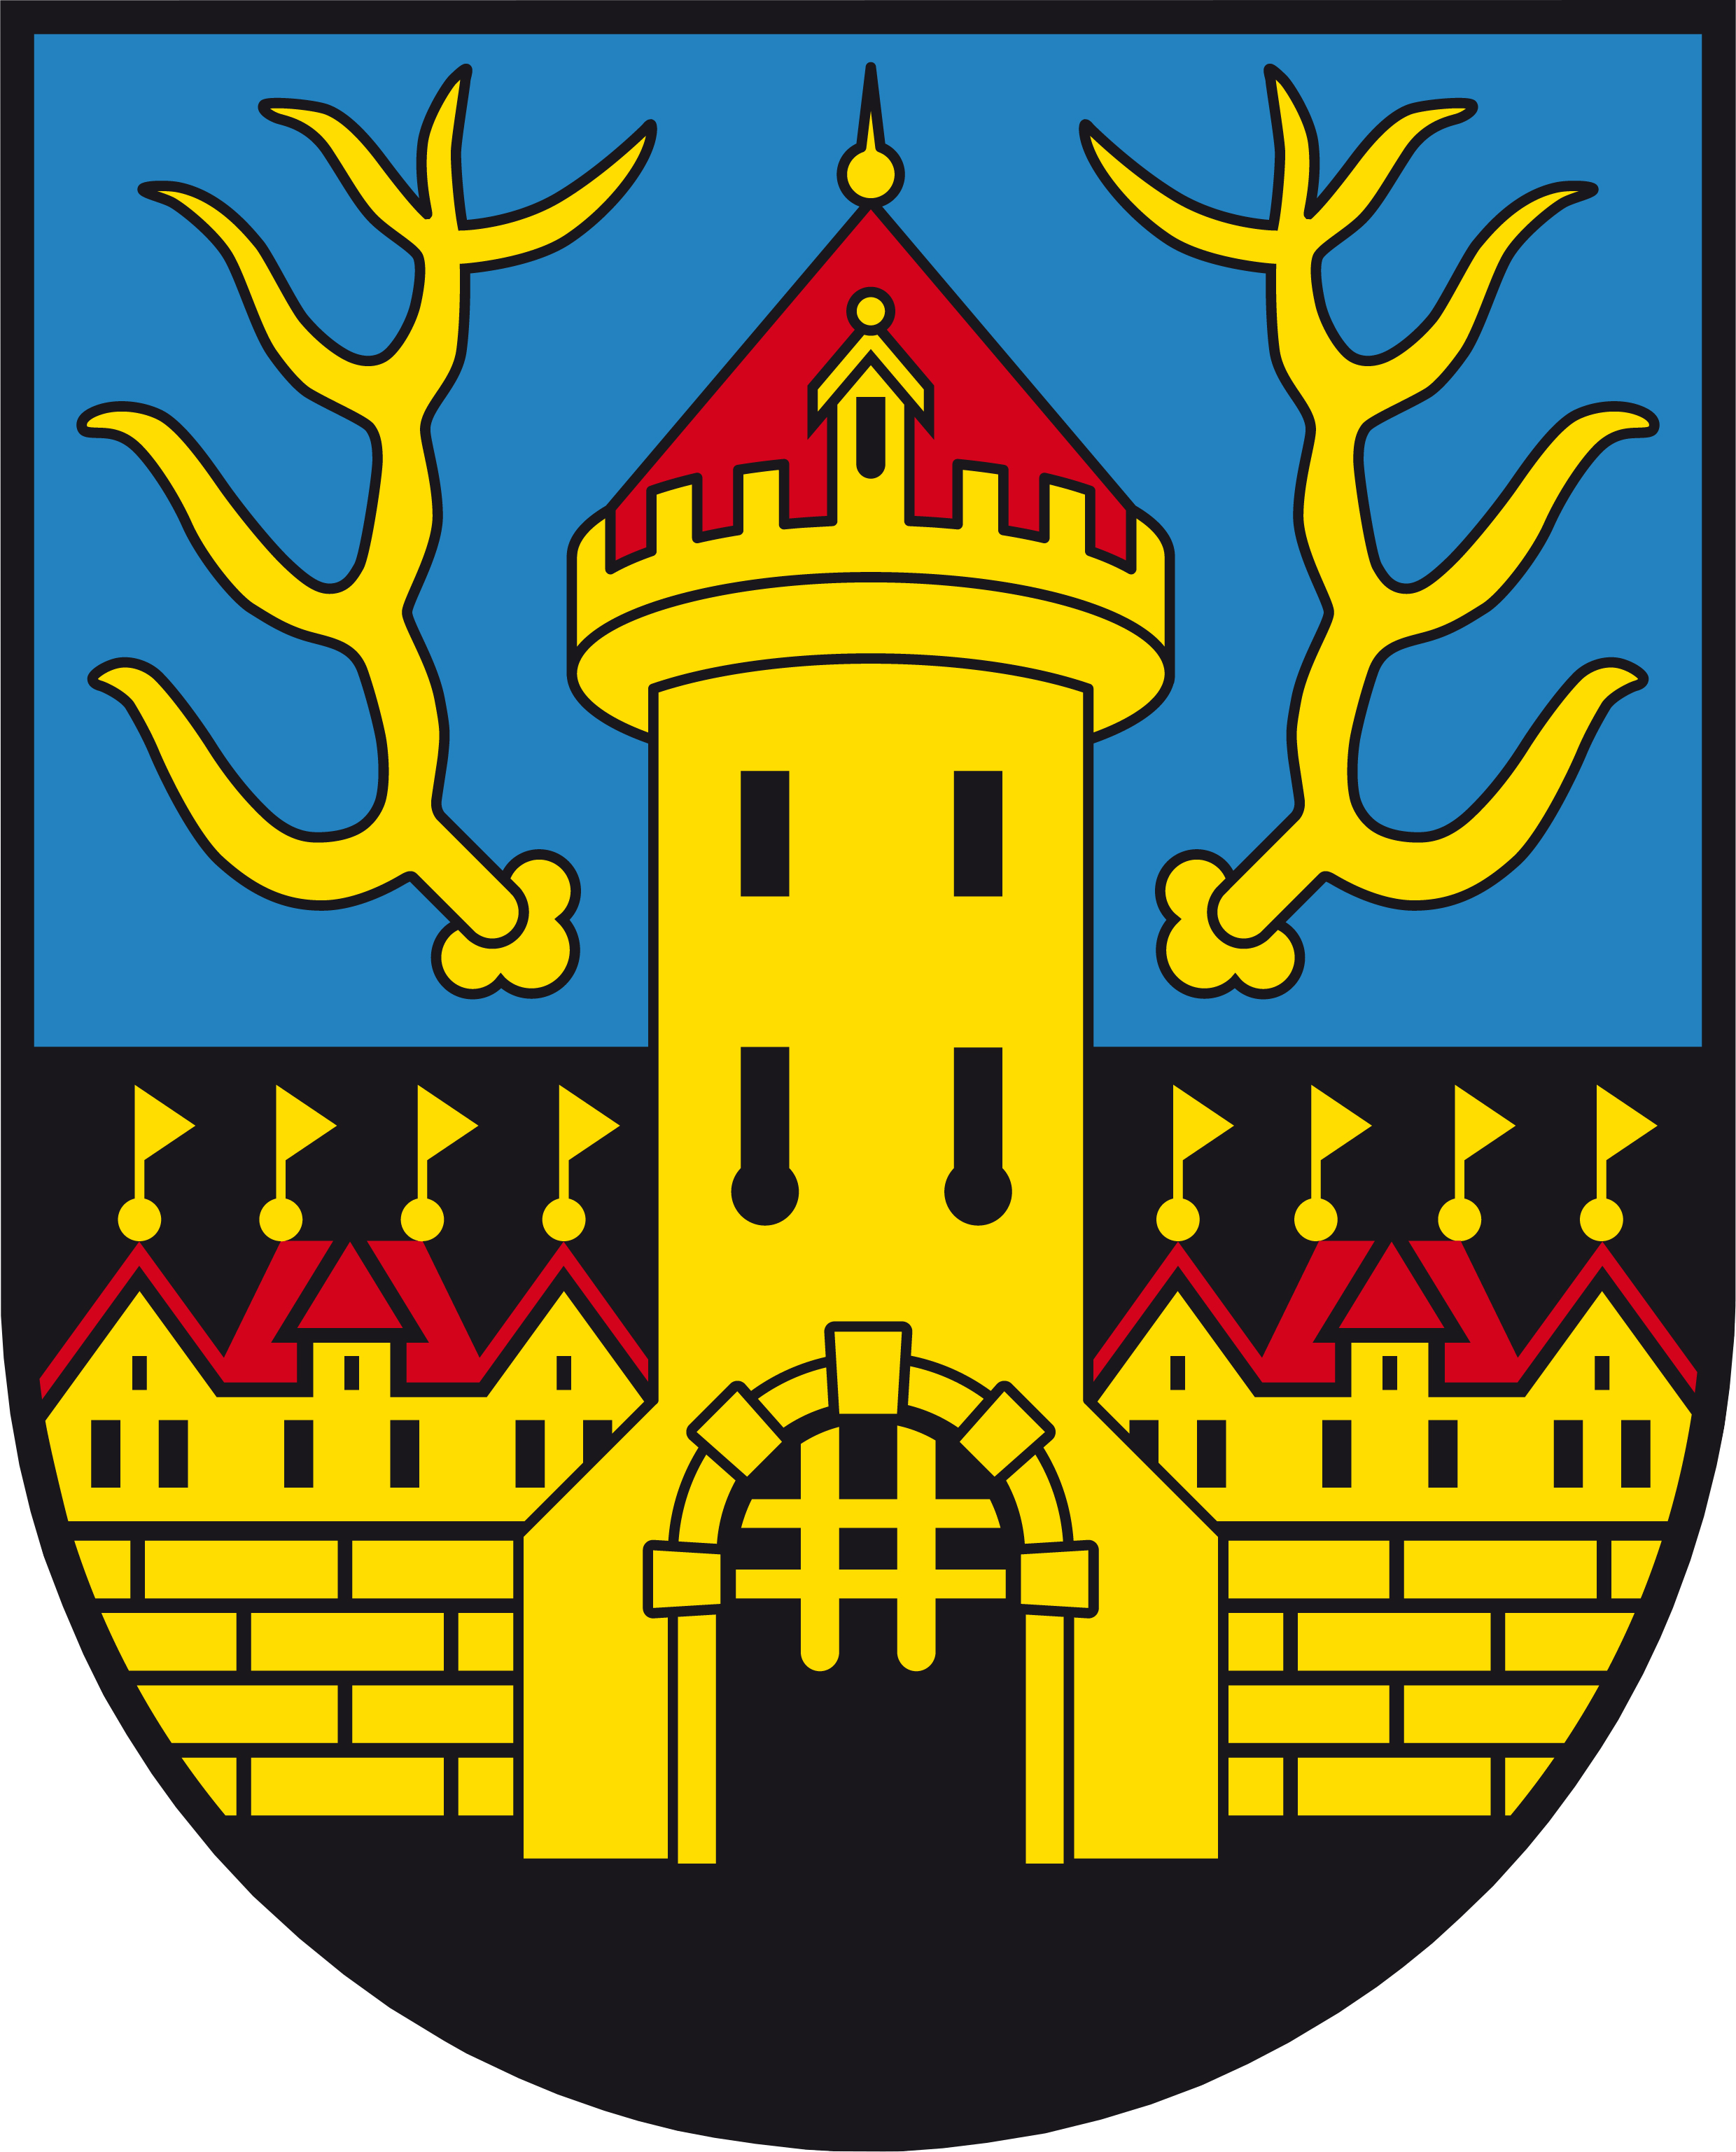 Wappen von Ottensheim